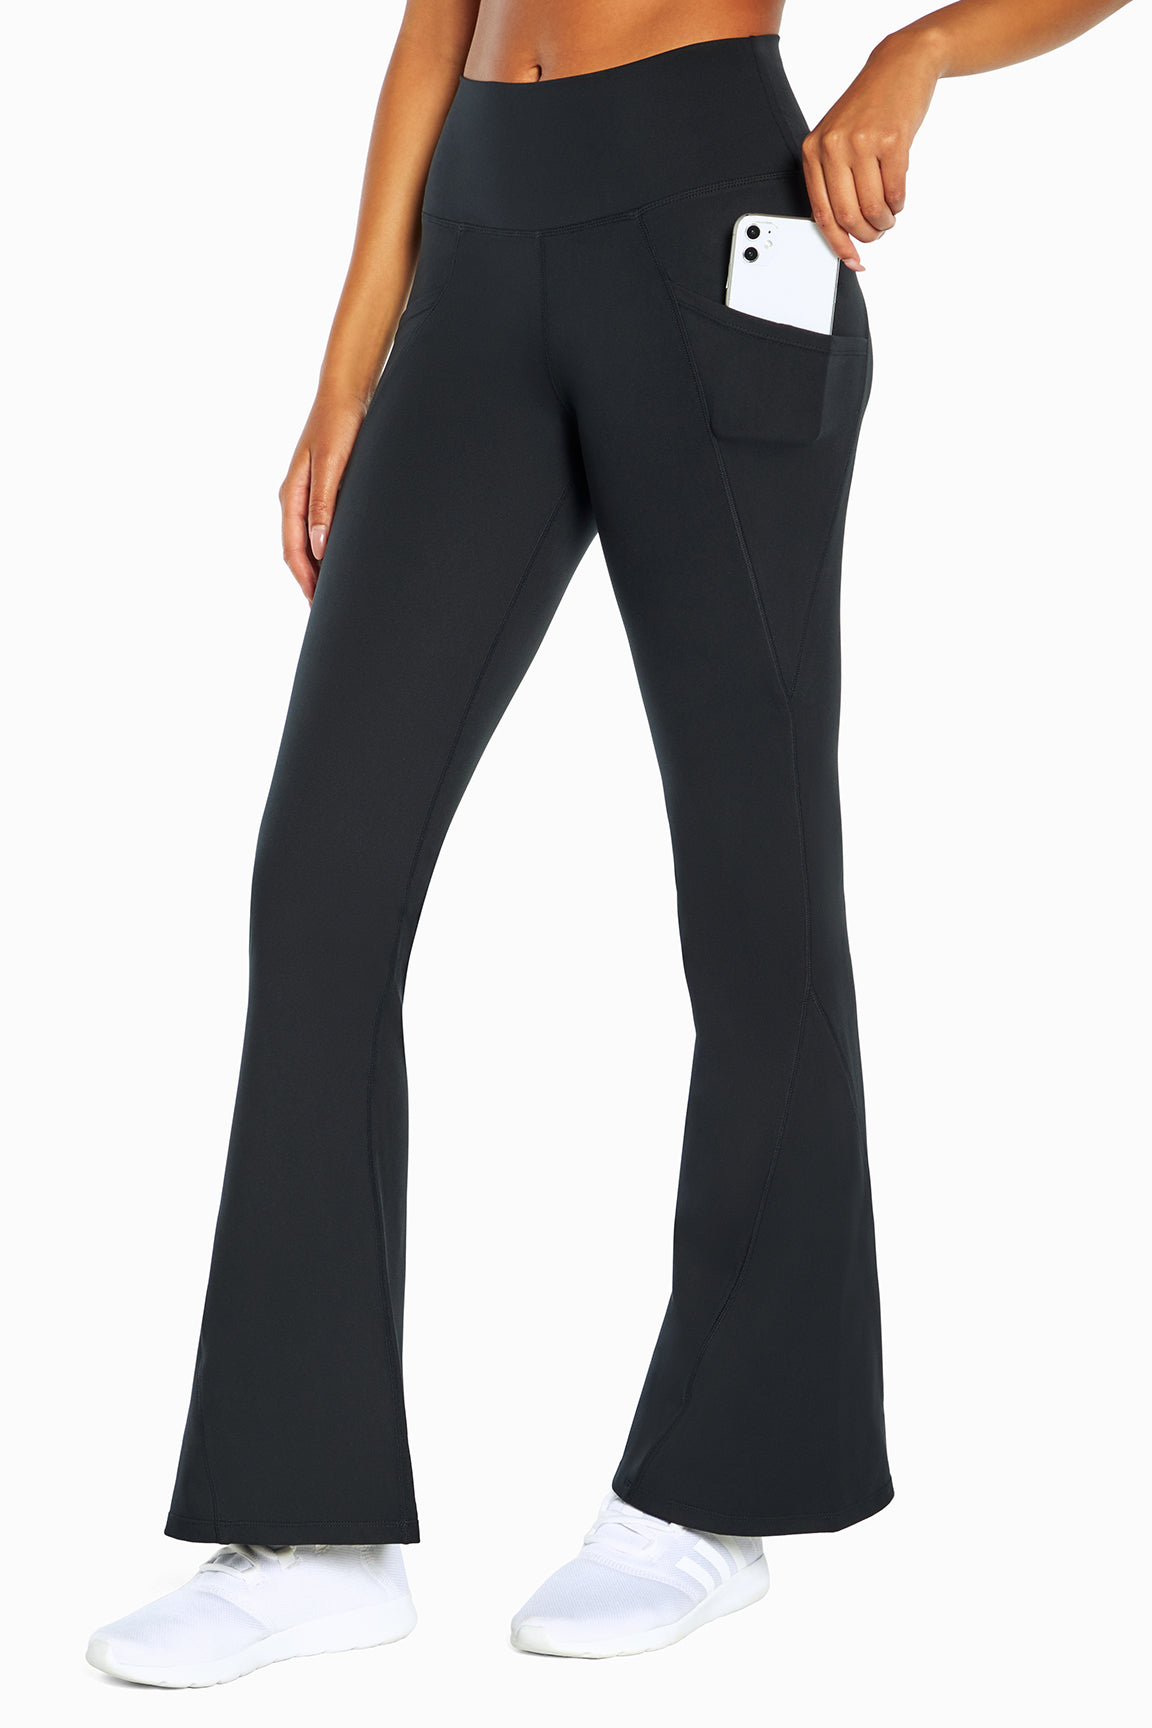 Marika Yoga Pants with key pocket Size XL